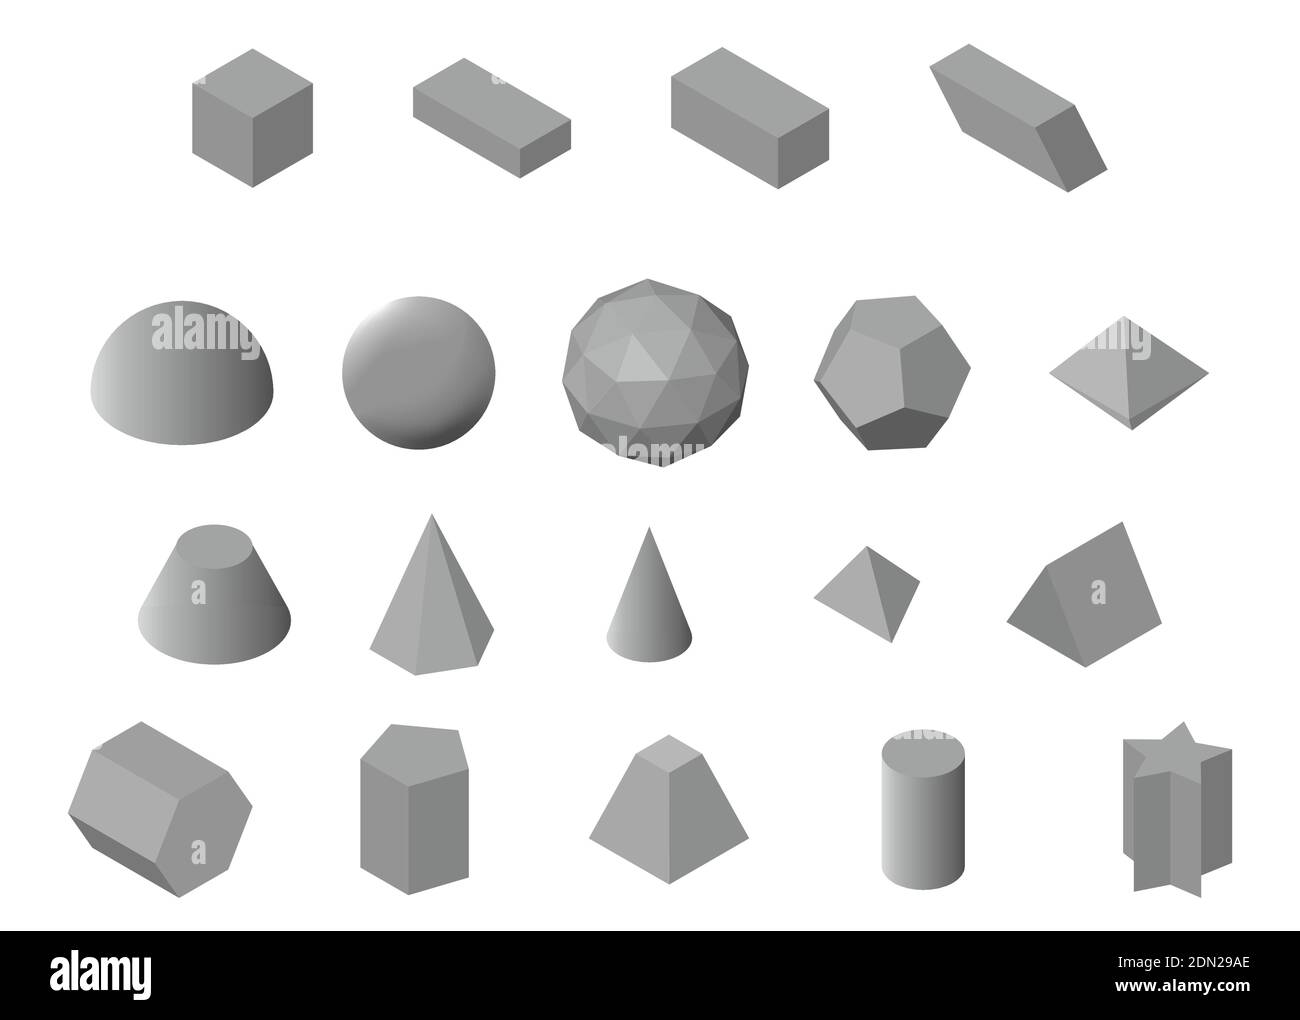 Satz isometrischer 3D-Grundformen. Graue geometrische Volumenkörper auf weißem Hintergrund isoliert. Vektorgrafik Stock Vektor